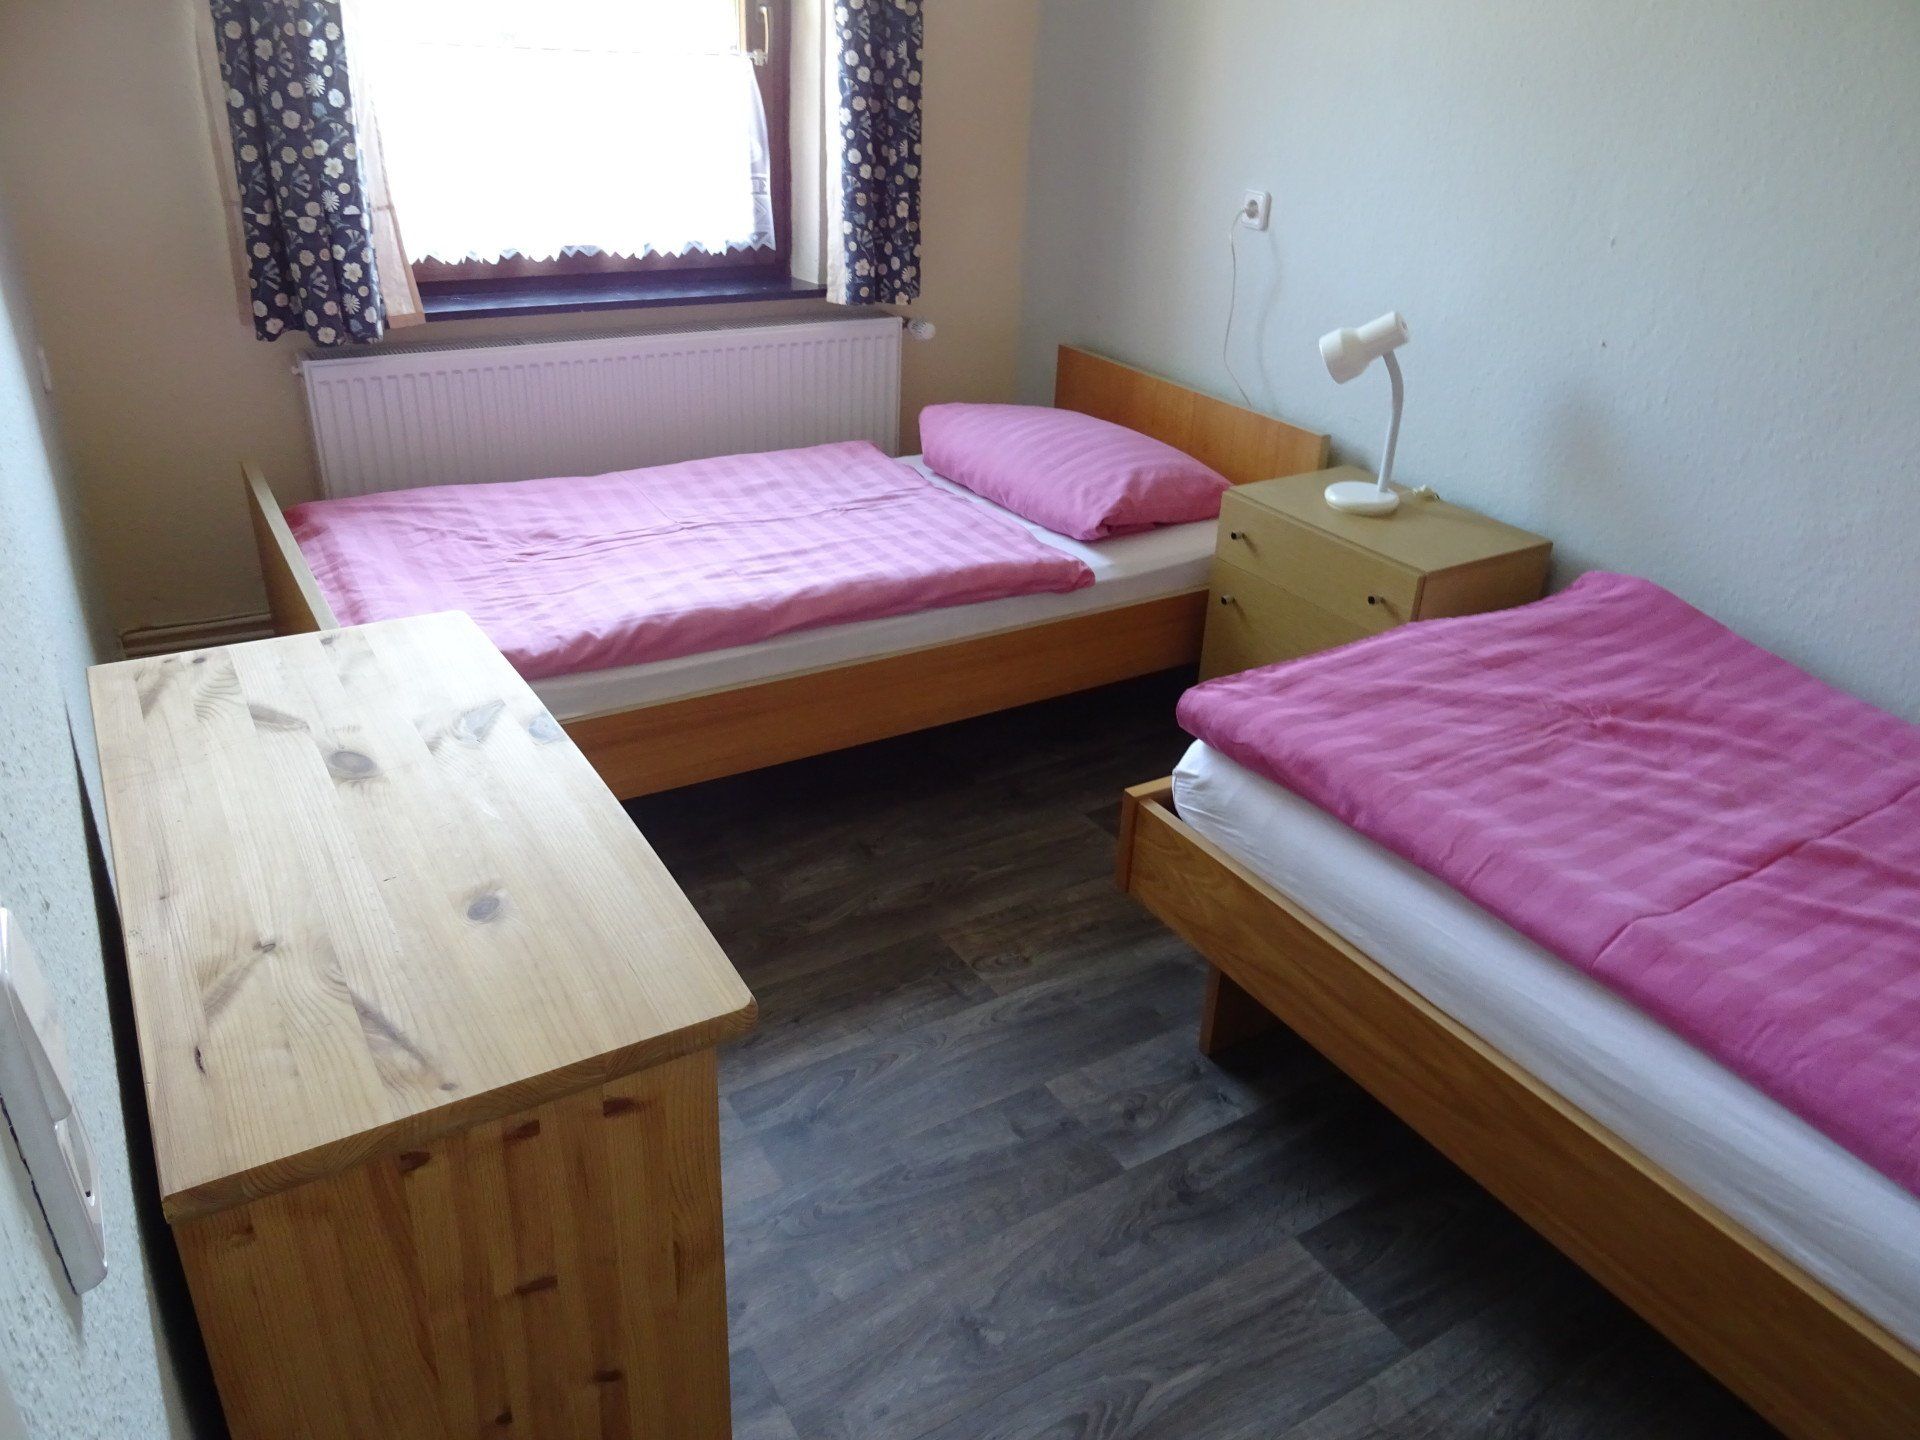 Schlafzimmer mit Einzelbetten in der Ferienwohnung Kirsche - Urlaub auf dem Land in der Natur